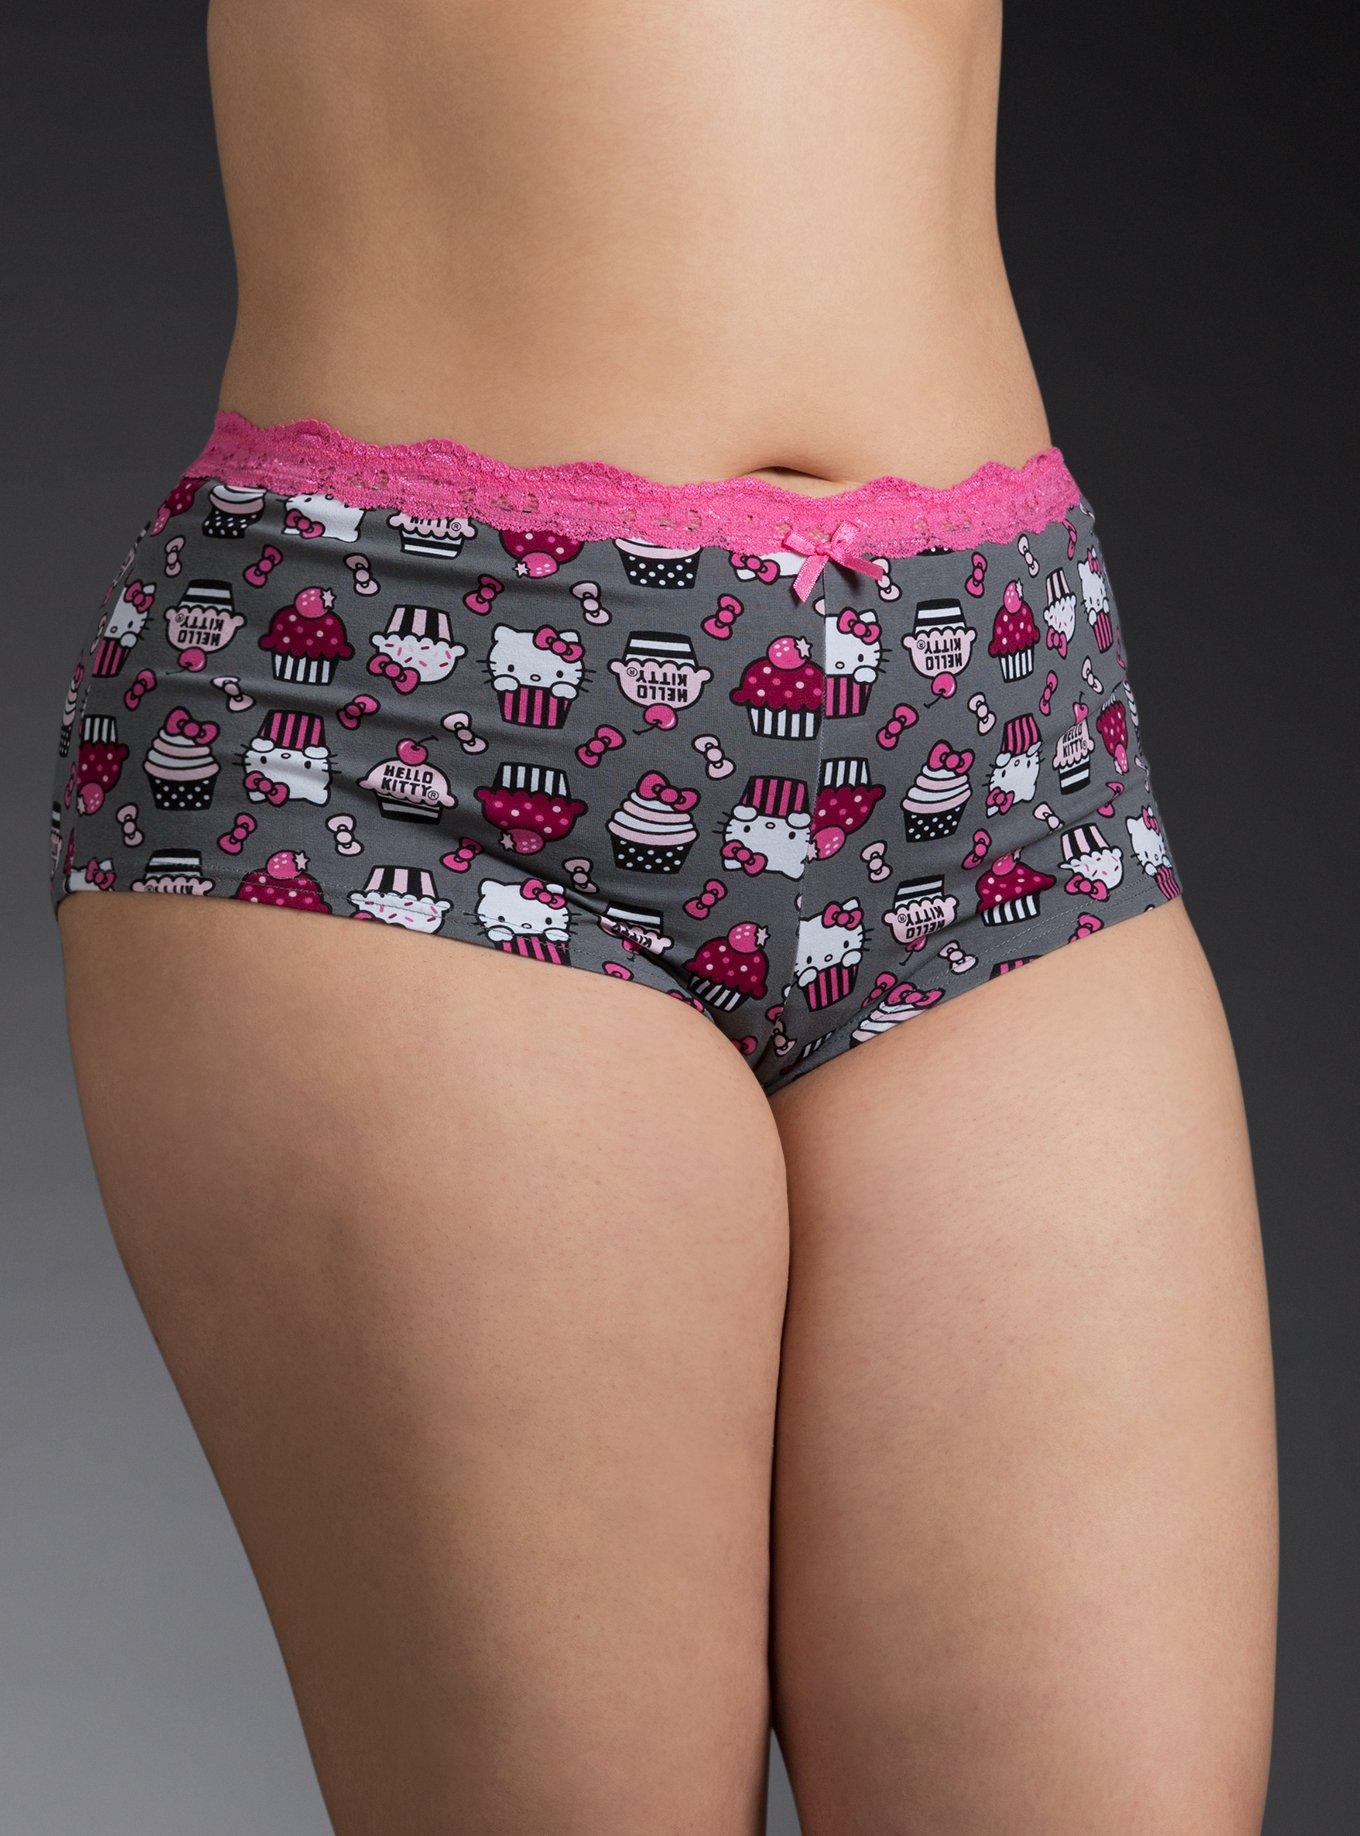 Hello Kitty Underwear Couple Suit Girl Boy Underwear Briefs Thong